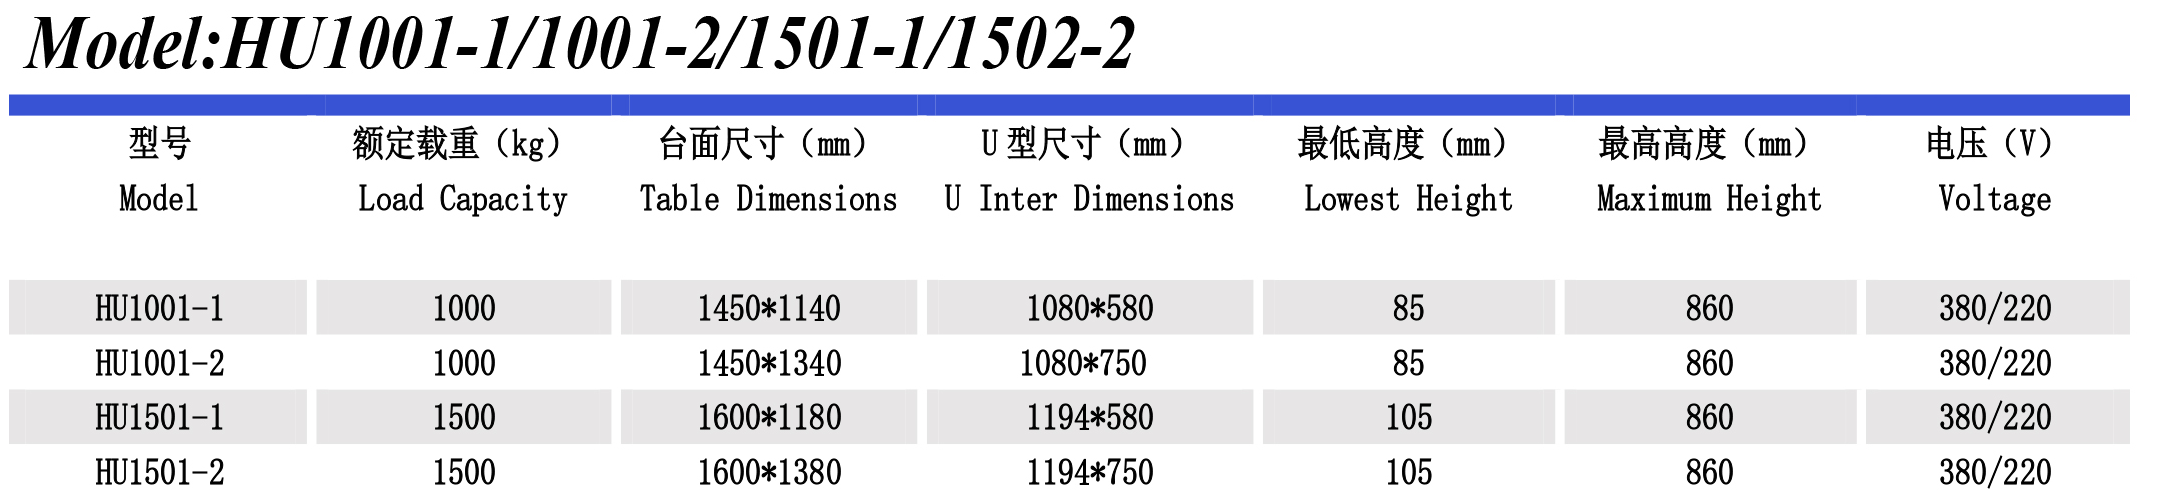 超低升降平臺HU1501-2